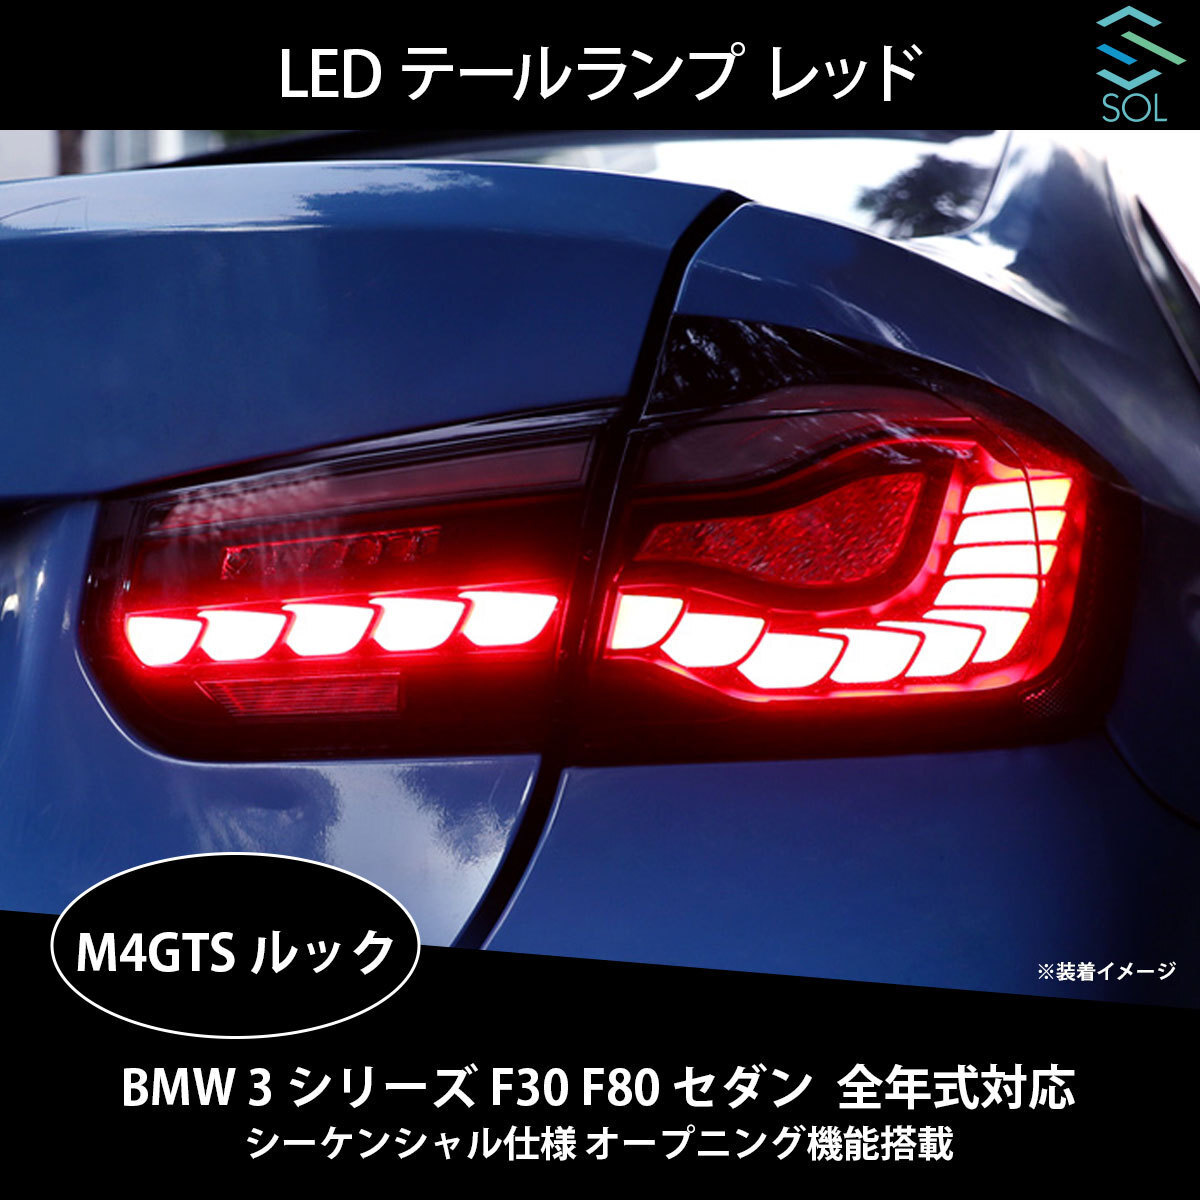 BMW 3シリーズ F30 F80 セダン 全年式対応 M4GTSルック LEDテールランプ レッド シーケンシャル仕様 オープニング機能搭載 出荷締切18時_画像1